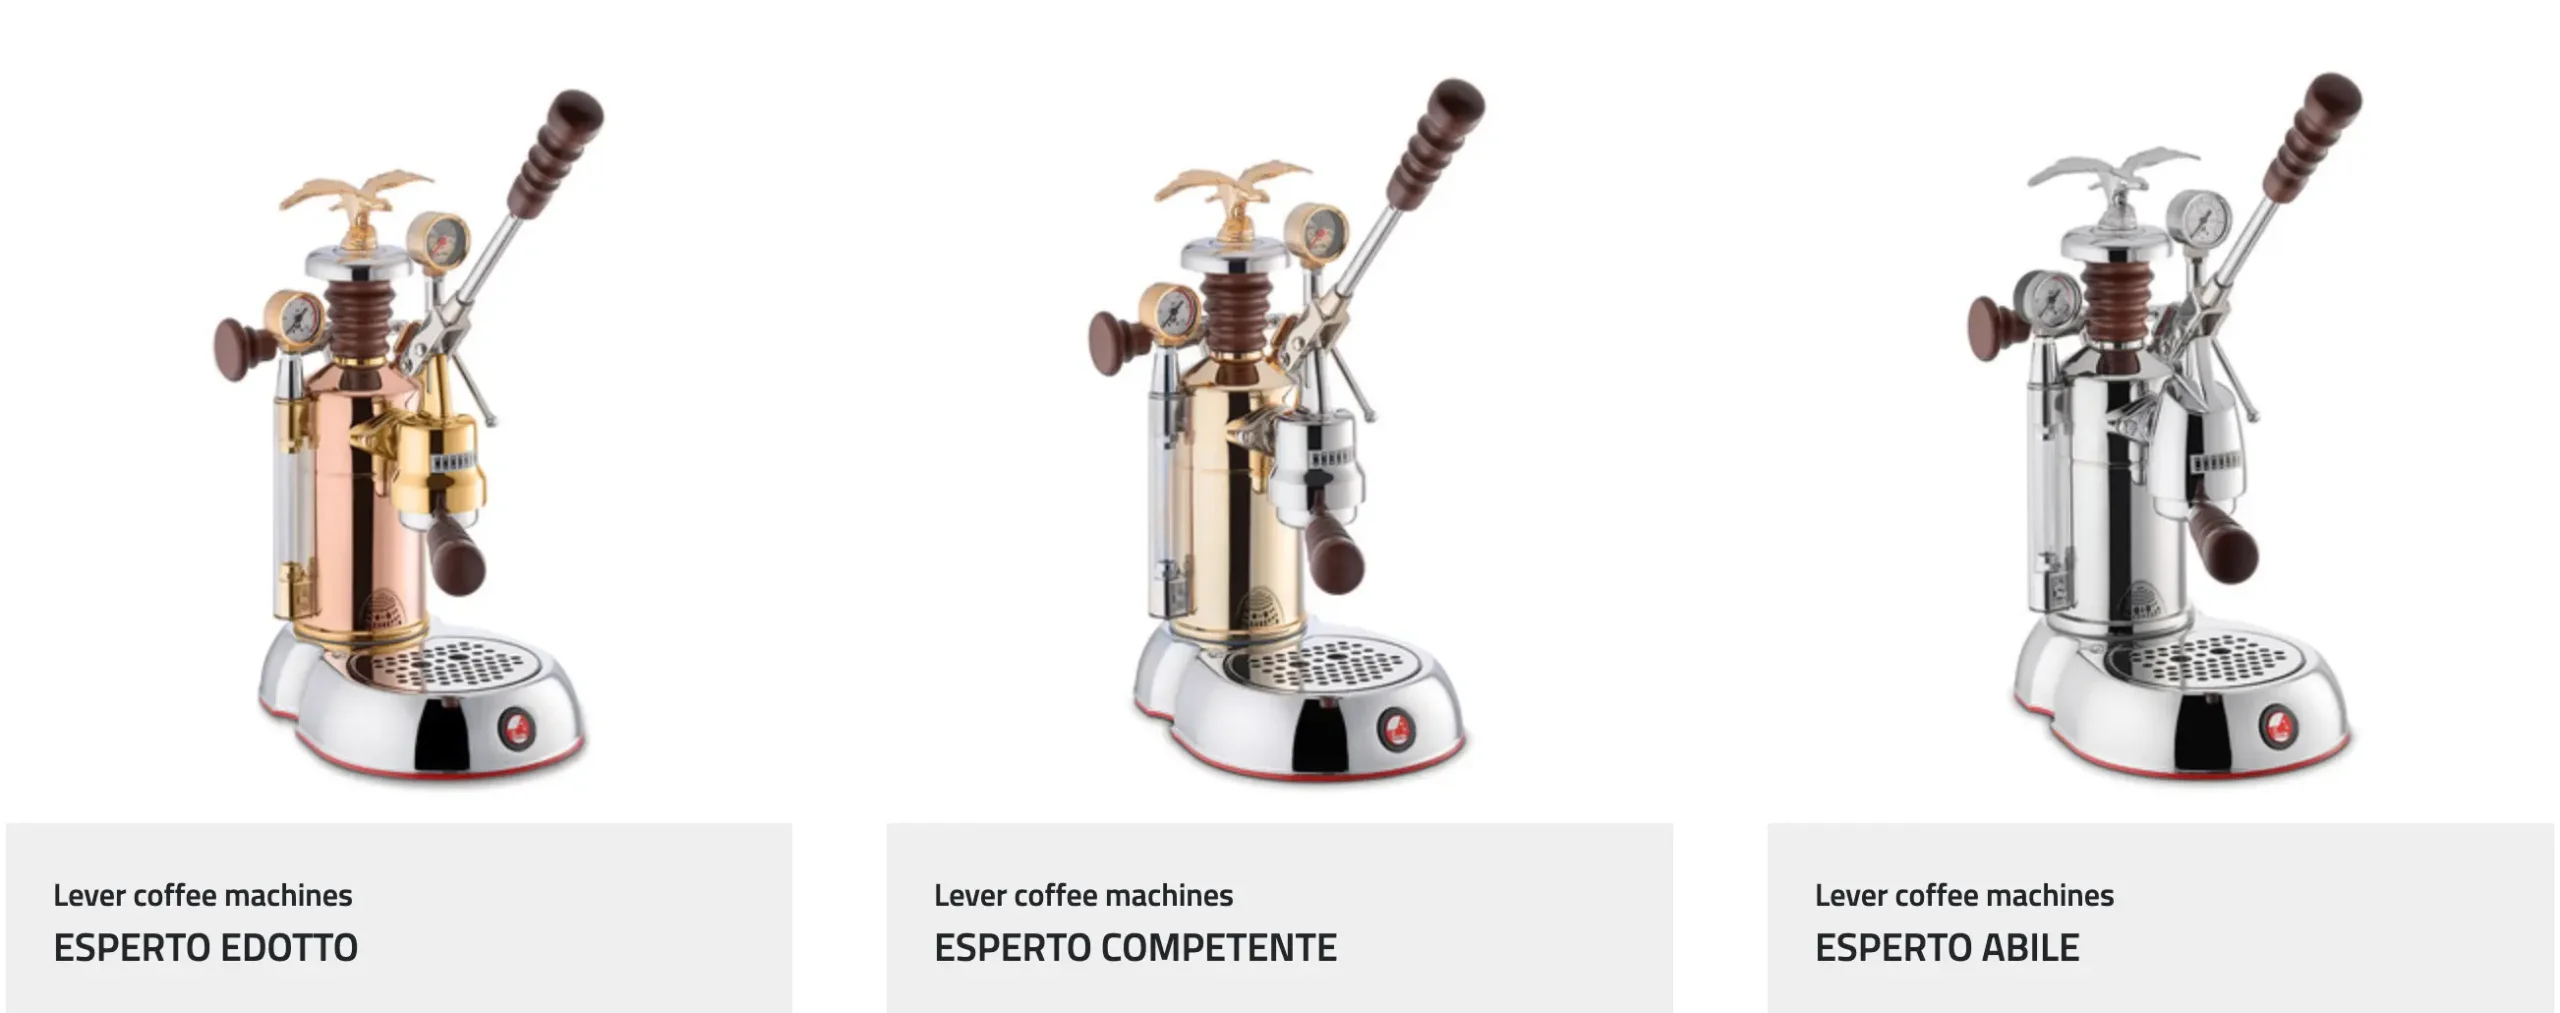 La Pavoni Esperto là dòng máy pha espresso dành cho chuyên gia với 3 loại Abile, Competente và Edotto